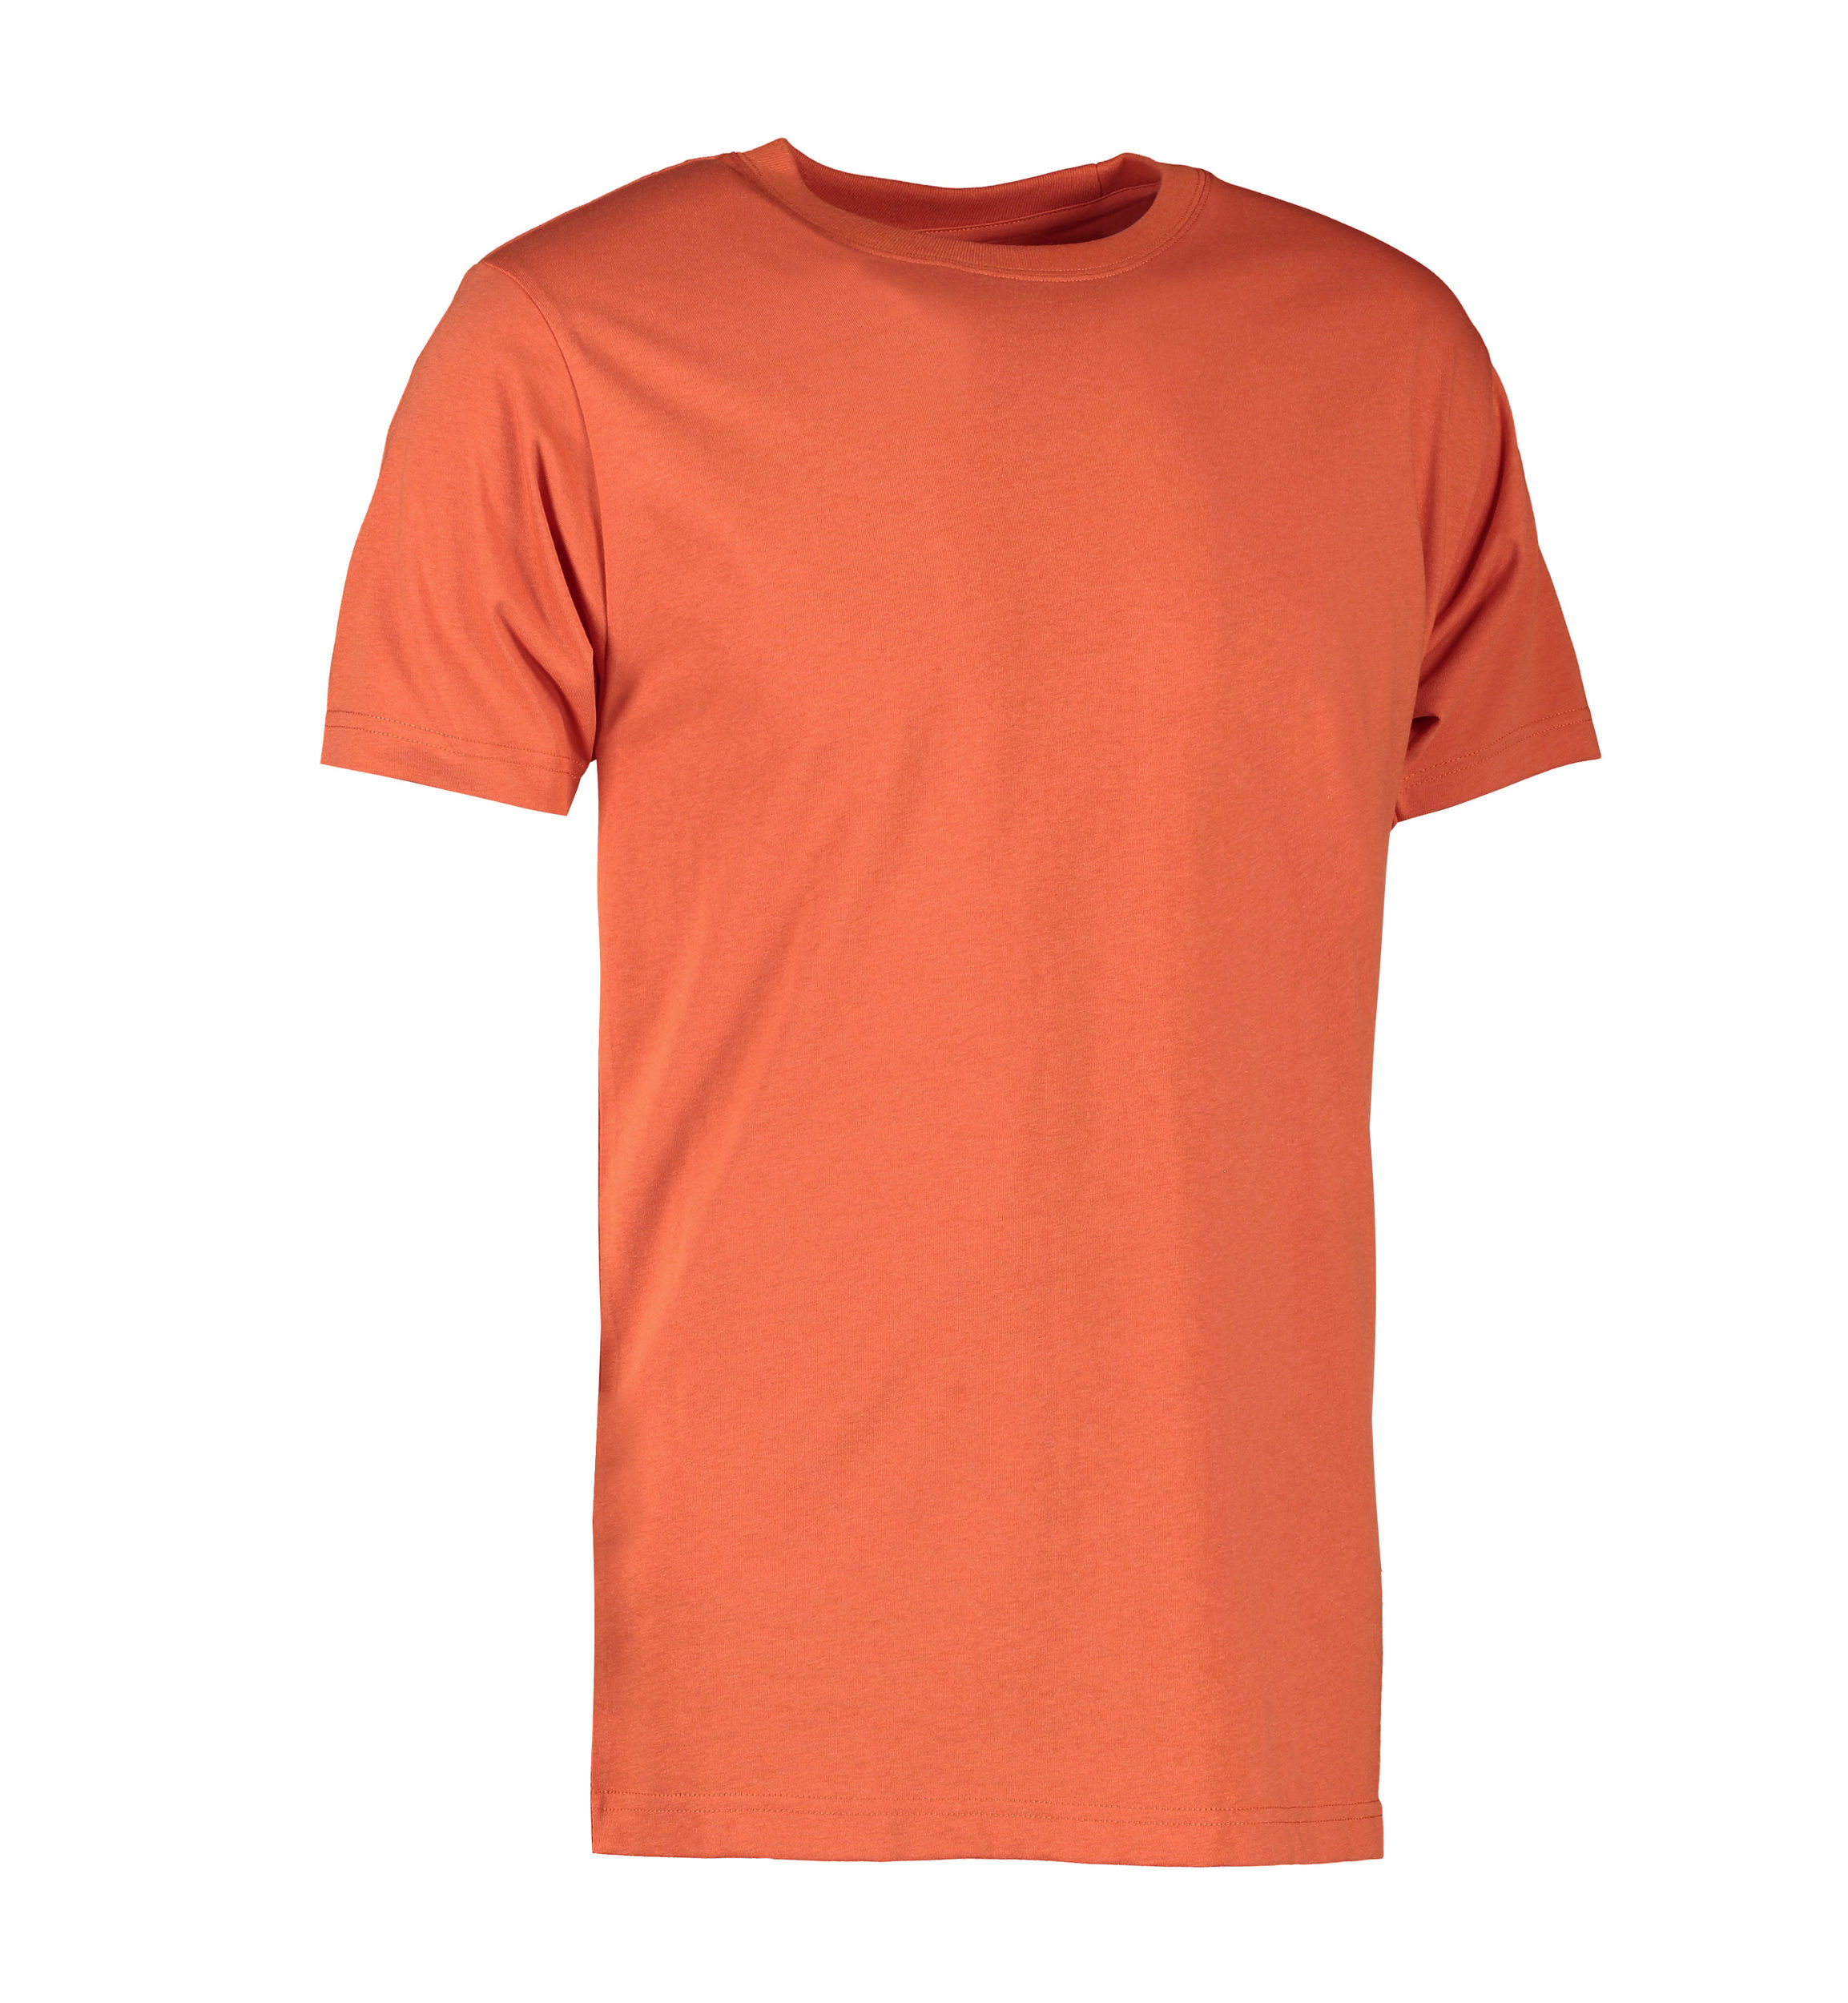 Billede af Koral farvet slidstærk t-shirt til mænd - XS hos Sygeplejebutikken.dk